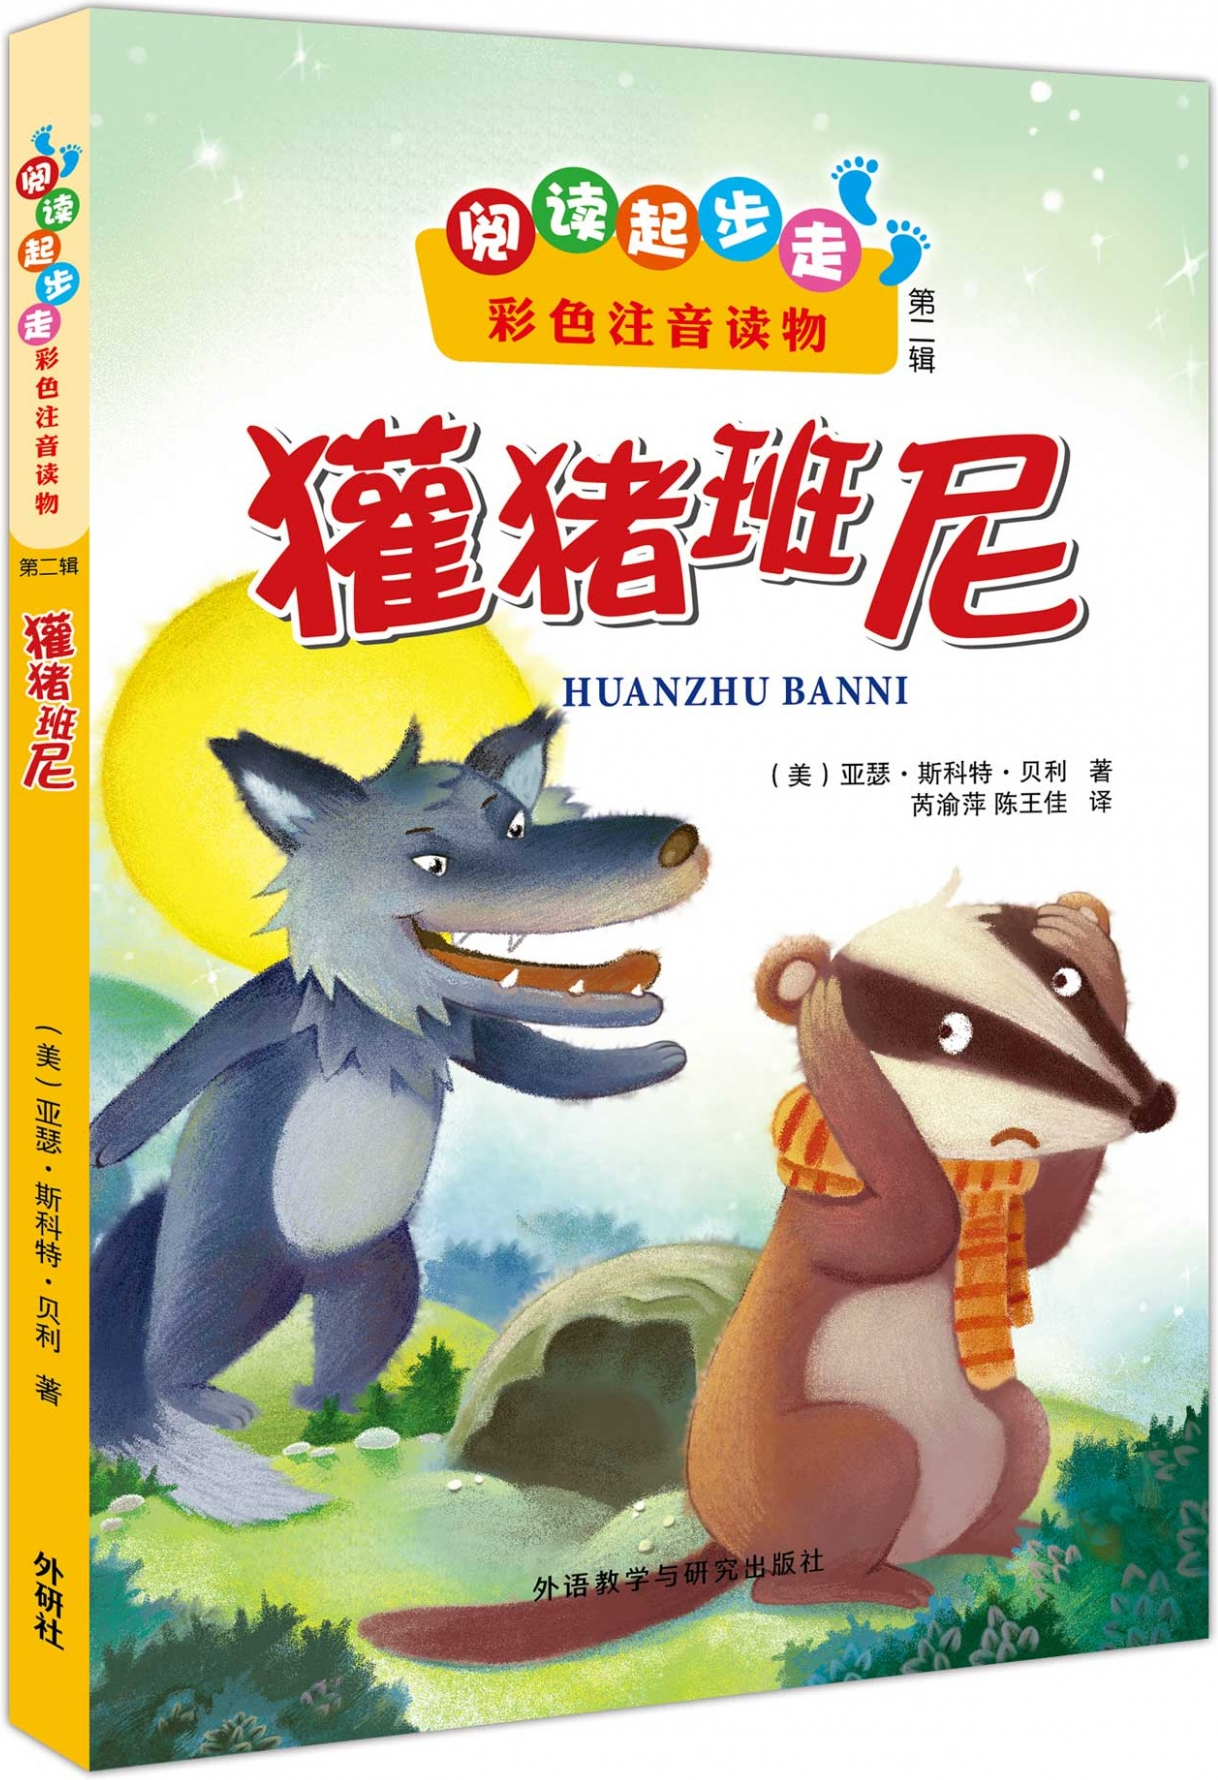 绘本故事《阅读起步走(第二辑):獾猪班尼(彩色注音读物)》